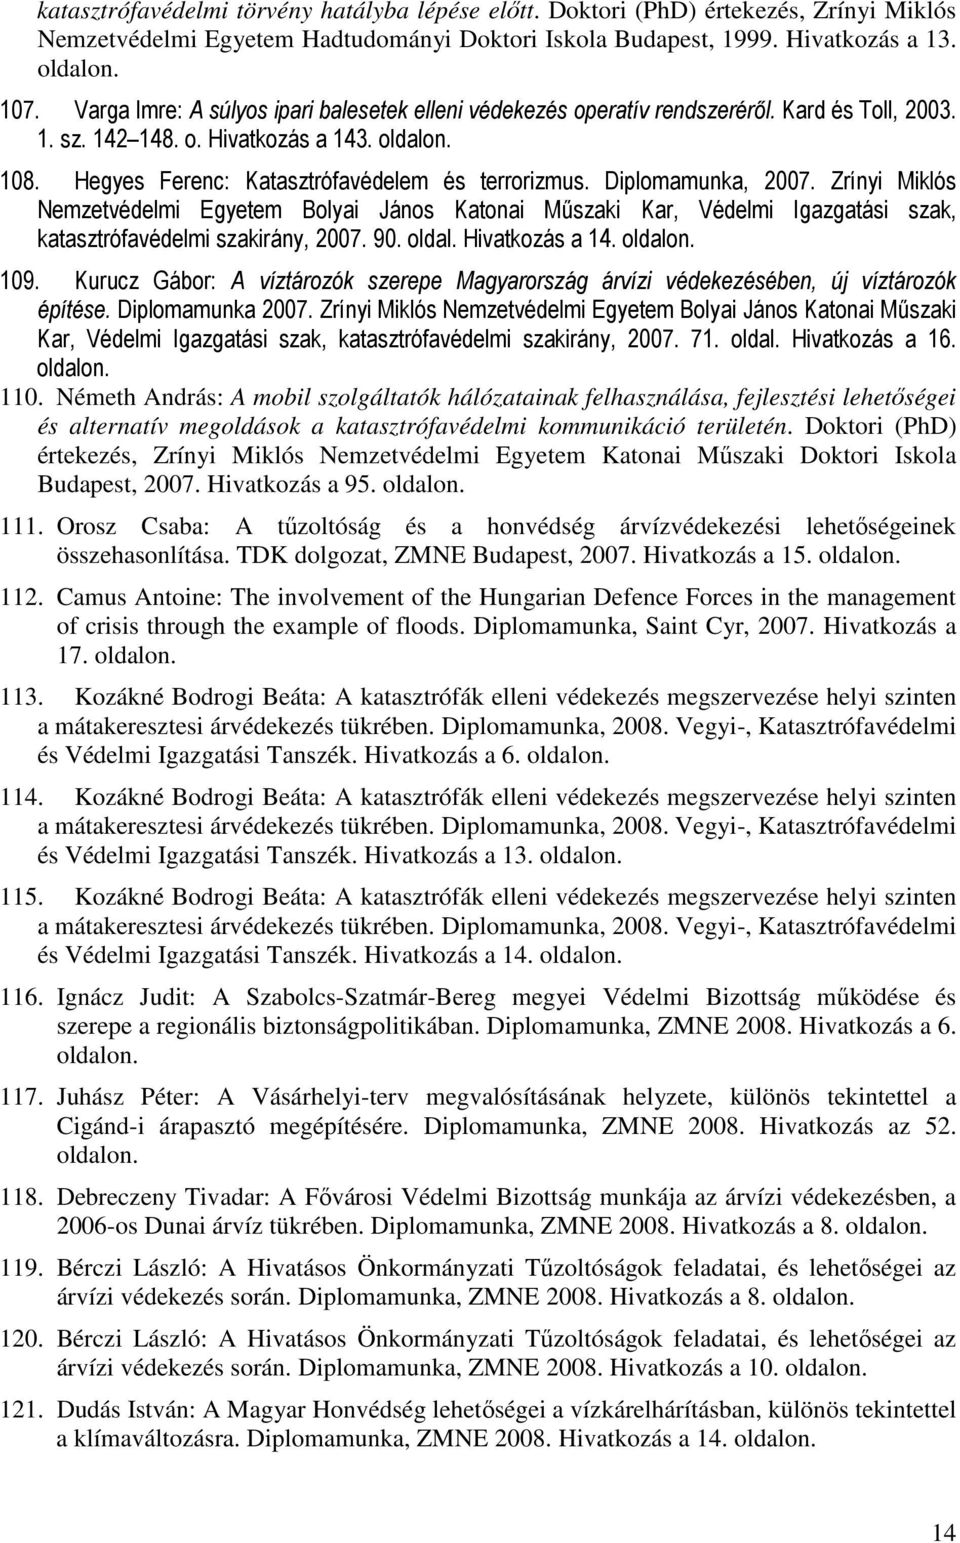 2005 A civil-katonai együttműködés lehetőségei a nemzetközi feladatokban  részt vevő magyar katonák biztonságának növelésében. Stratégiai kutatások -  PDF Ingyenes letöltés